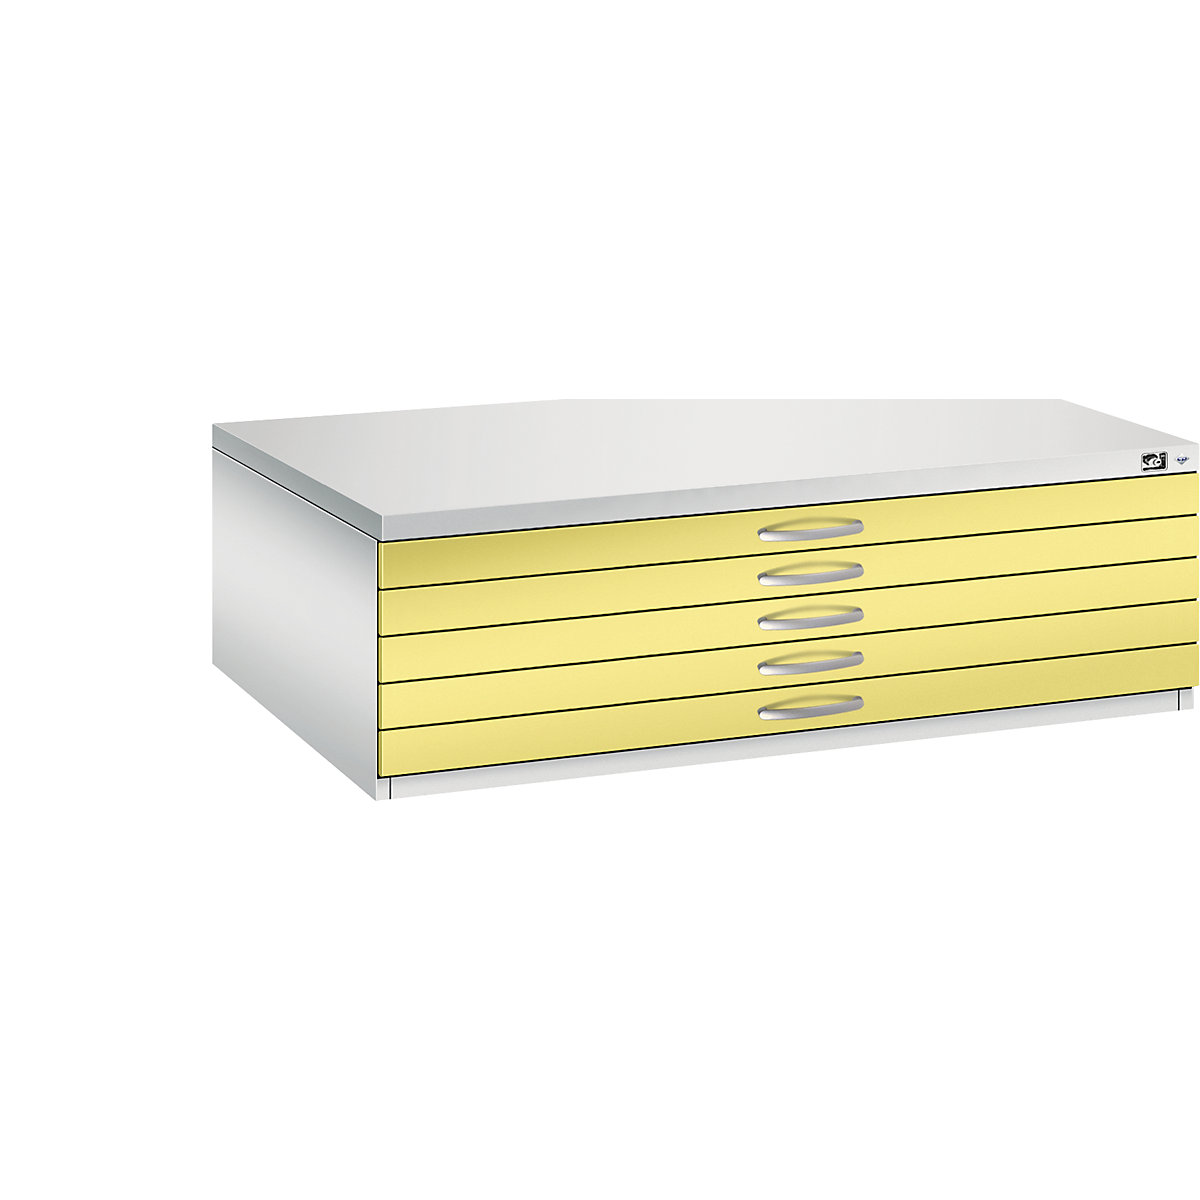 Dulap pentru planșe – C+P, DIN A0, 5 sertare, înălțime 420 mm, gri deschis / galben sulf-22